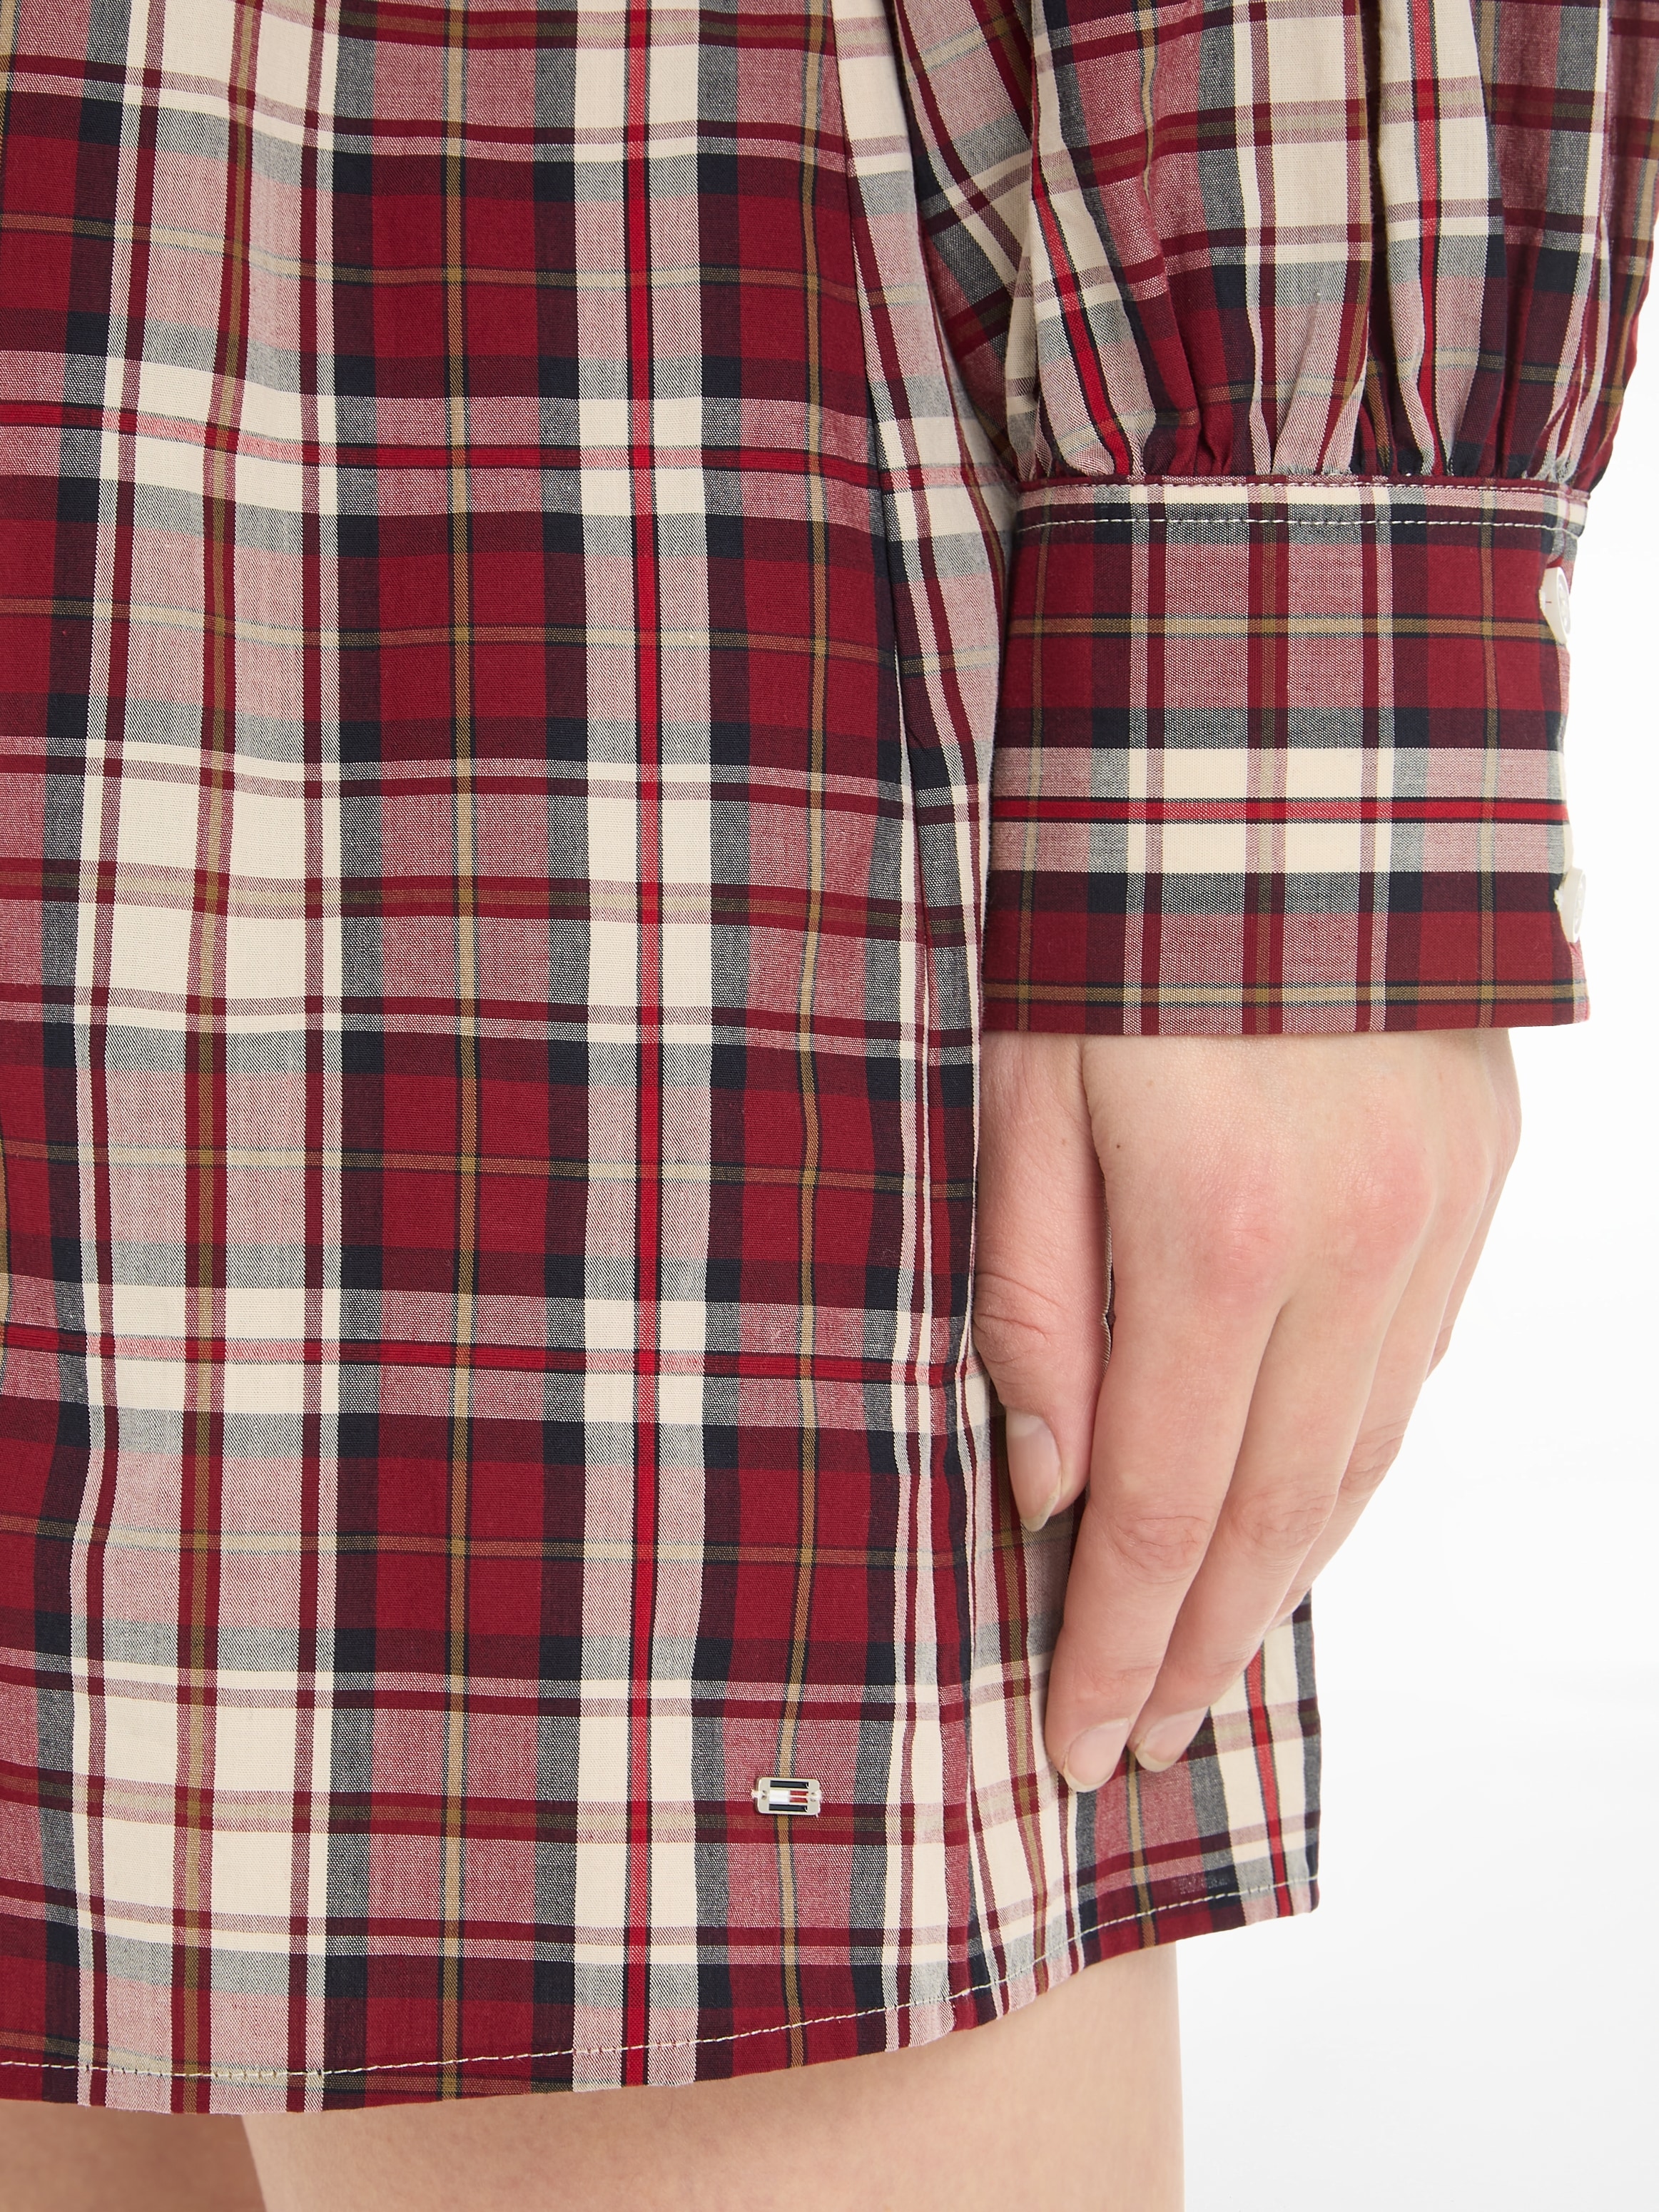 Tommy Hilfiger Blusenkleid »TARTAN CO V-NECK SHIRT DRESS«, mit 2-Knopf-Manschetten